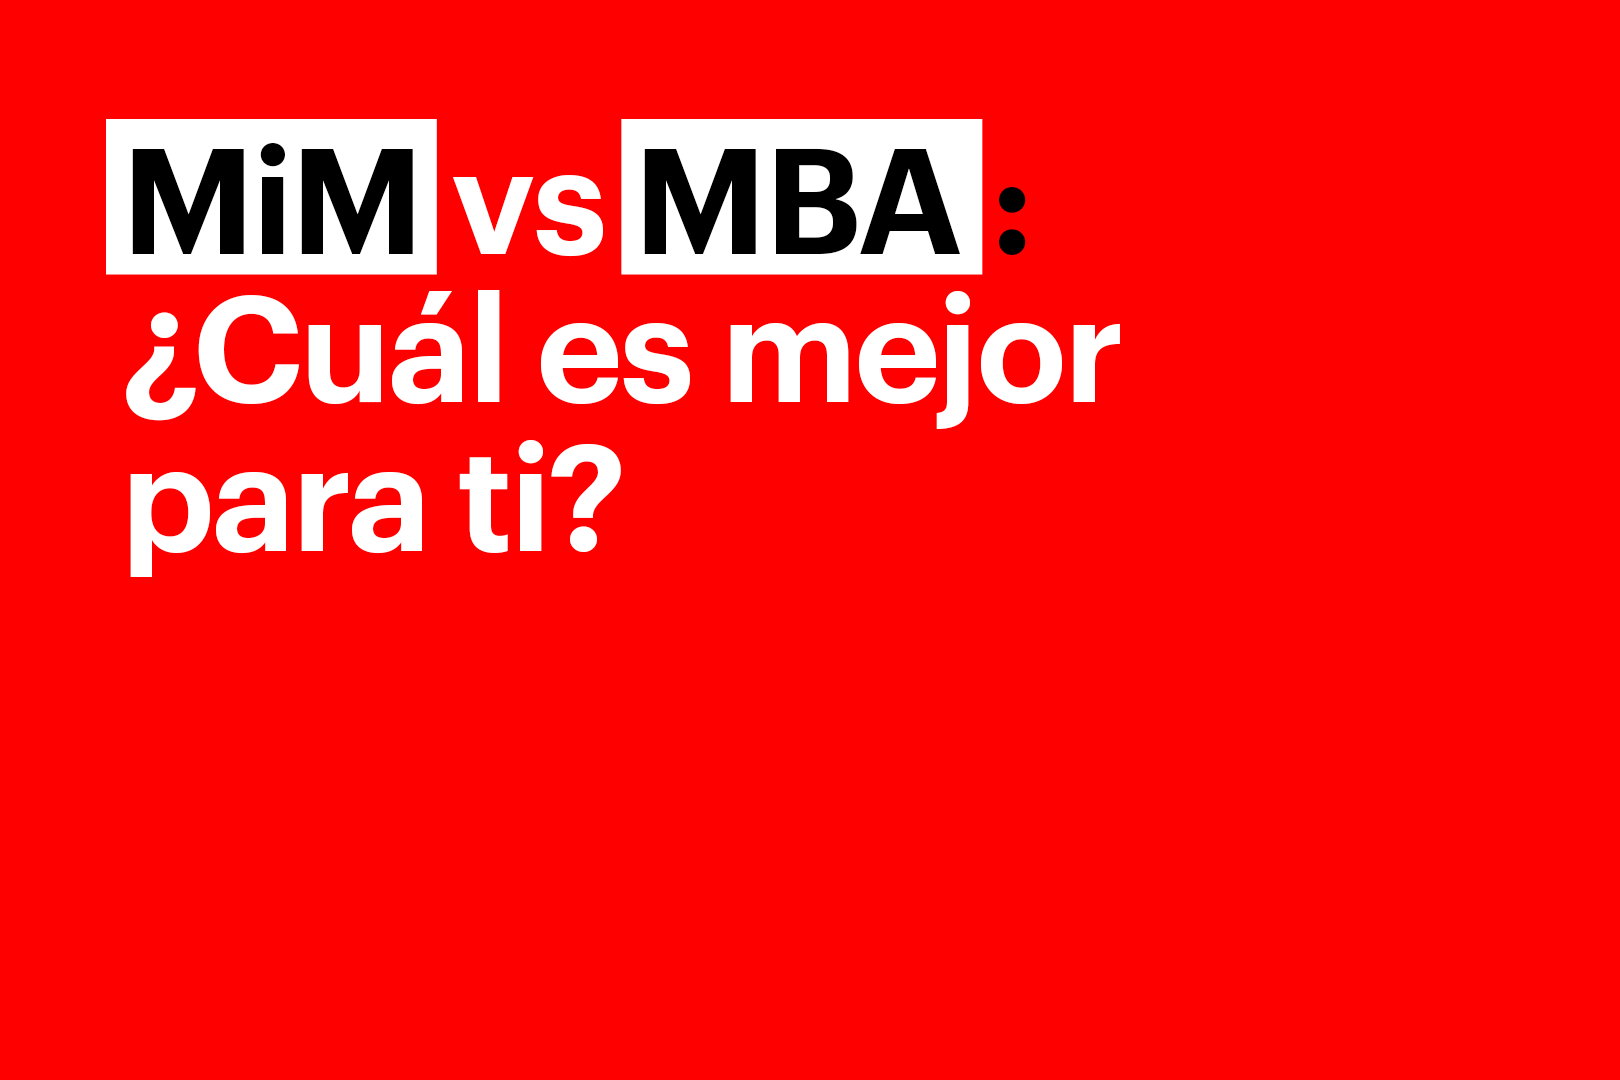 MIM vs MBA diferencias